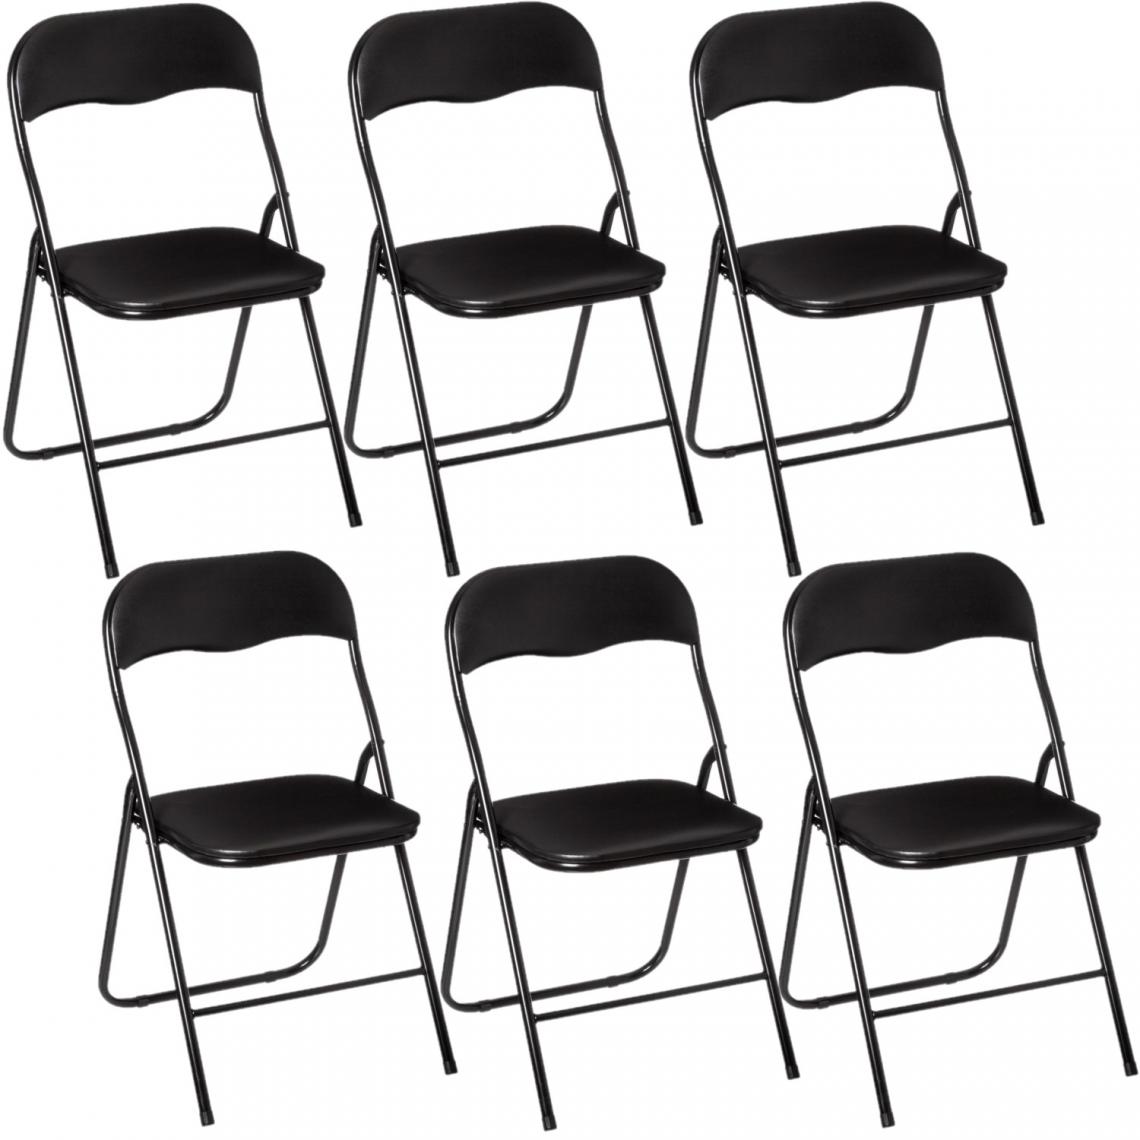 Toilinux - Lot de 6 Chaises pliantes en PVC - Noir - Chaises